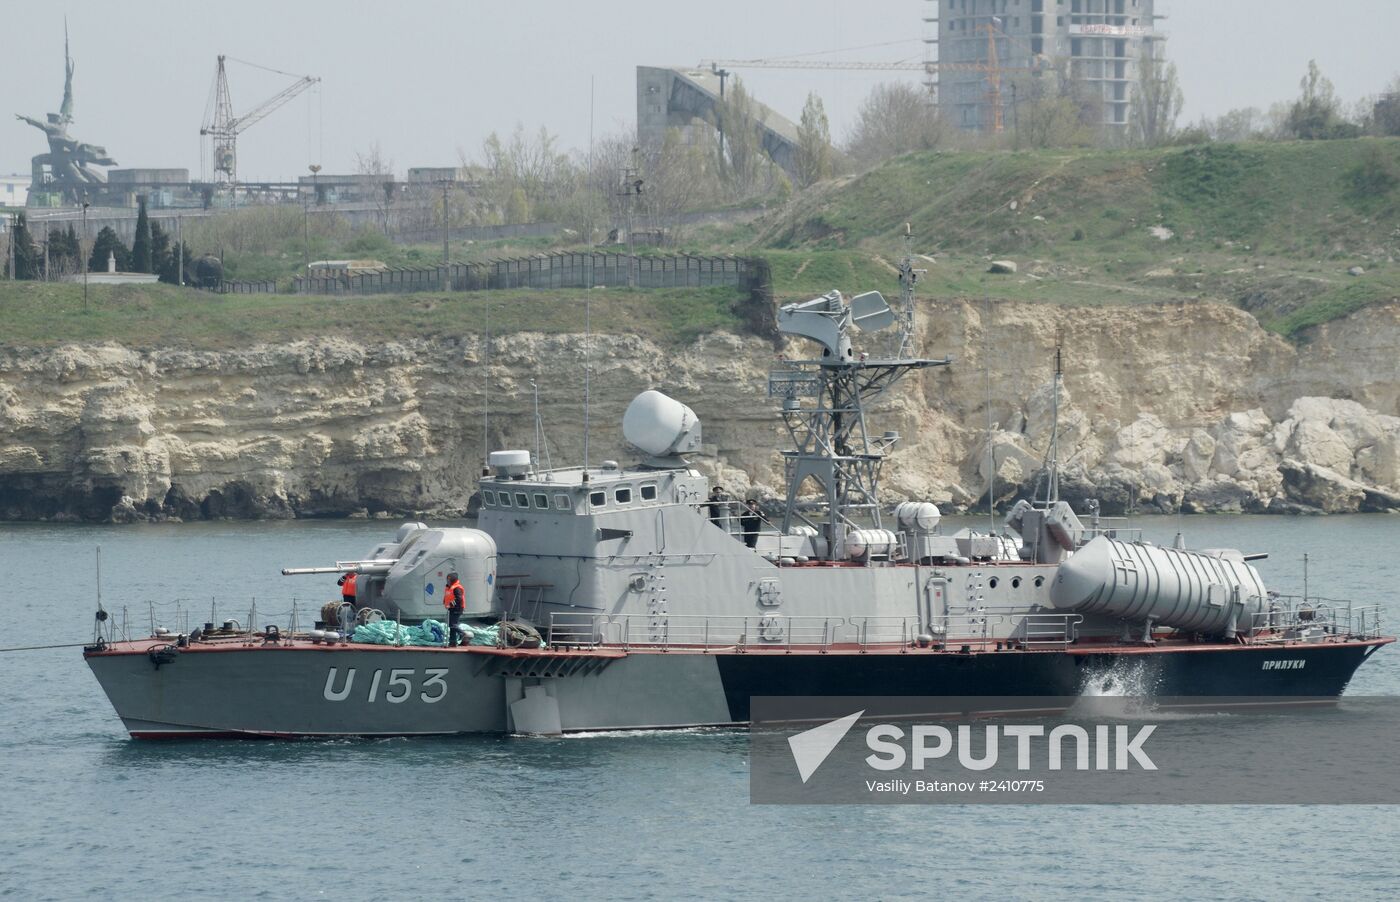 Ukraine's missile boat "Priluki" and tanker "Fastov" leave Sevastopol